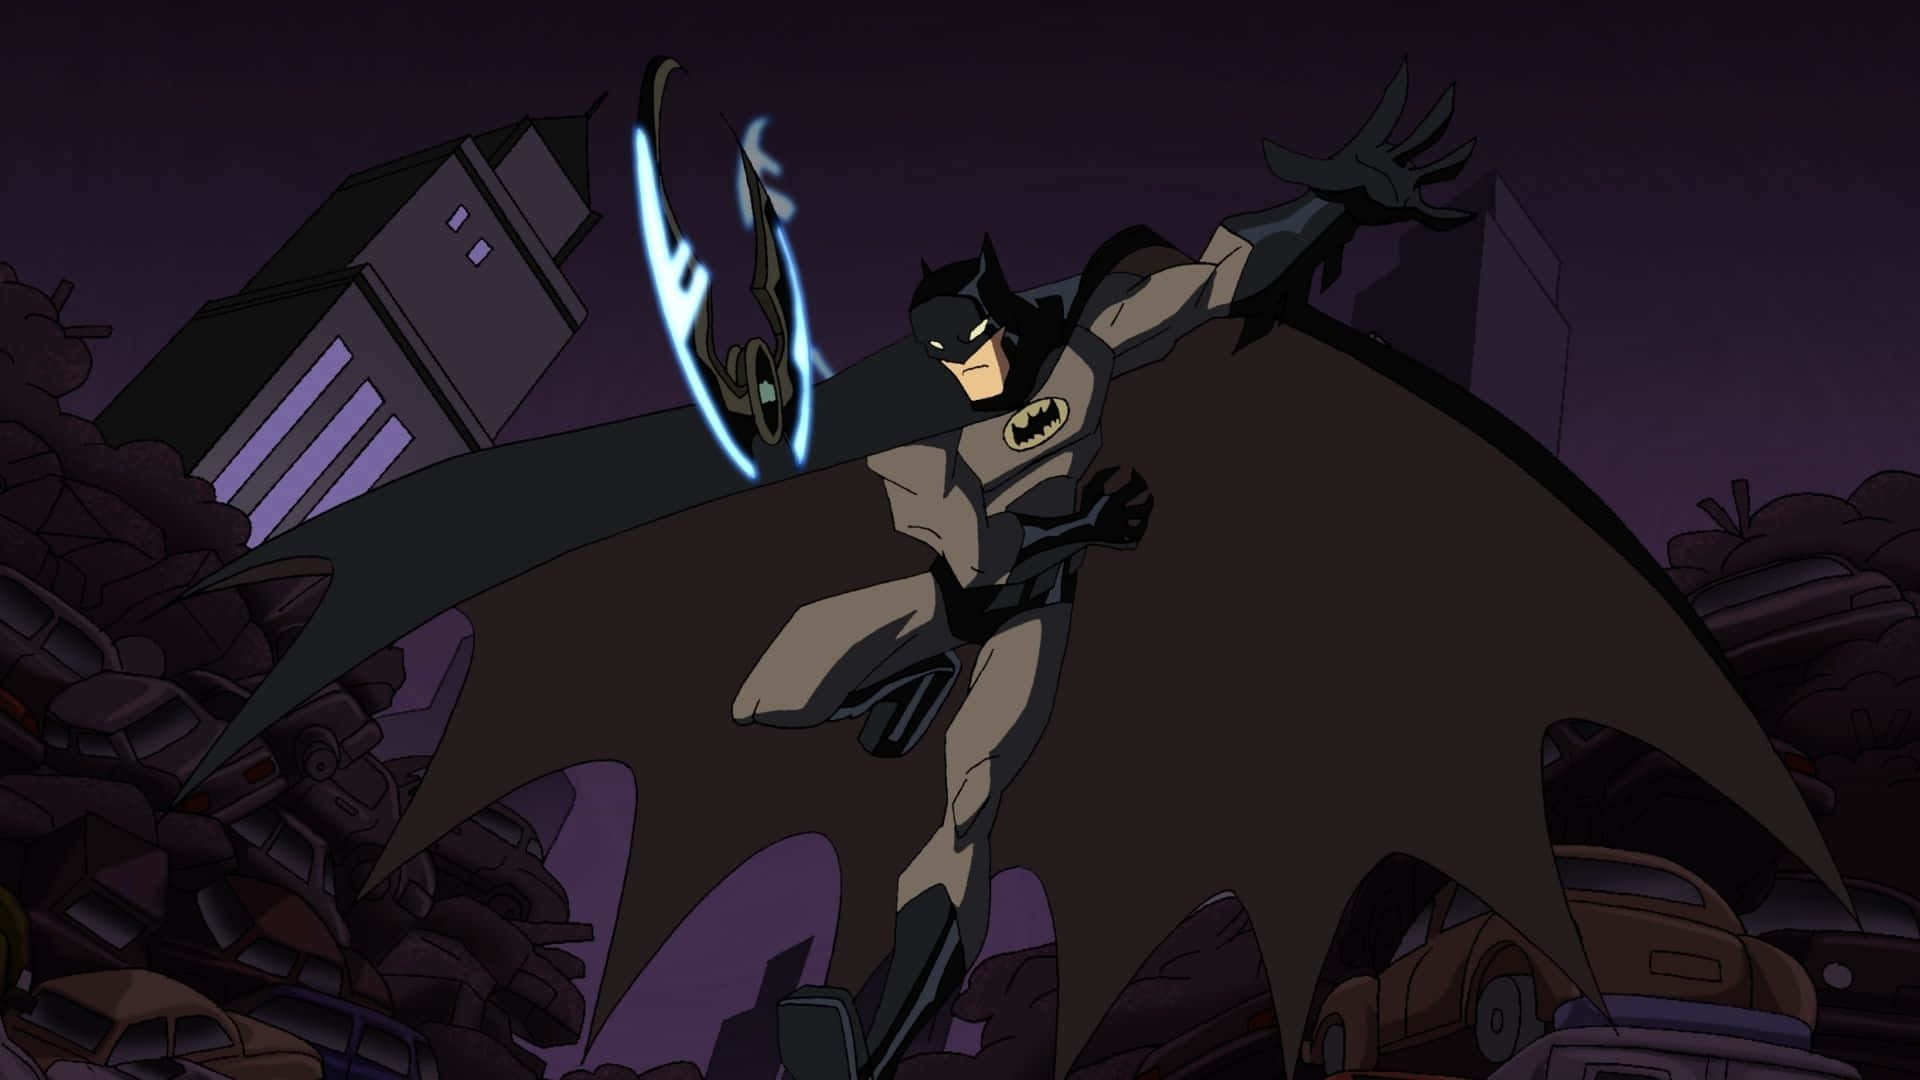 Batman facing off the criminals in Gotham City Wallpaper